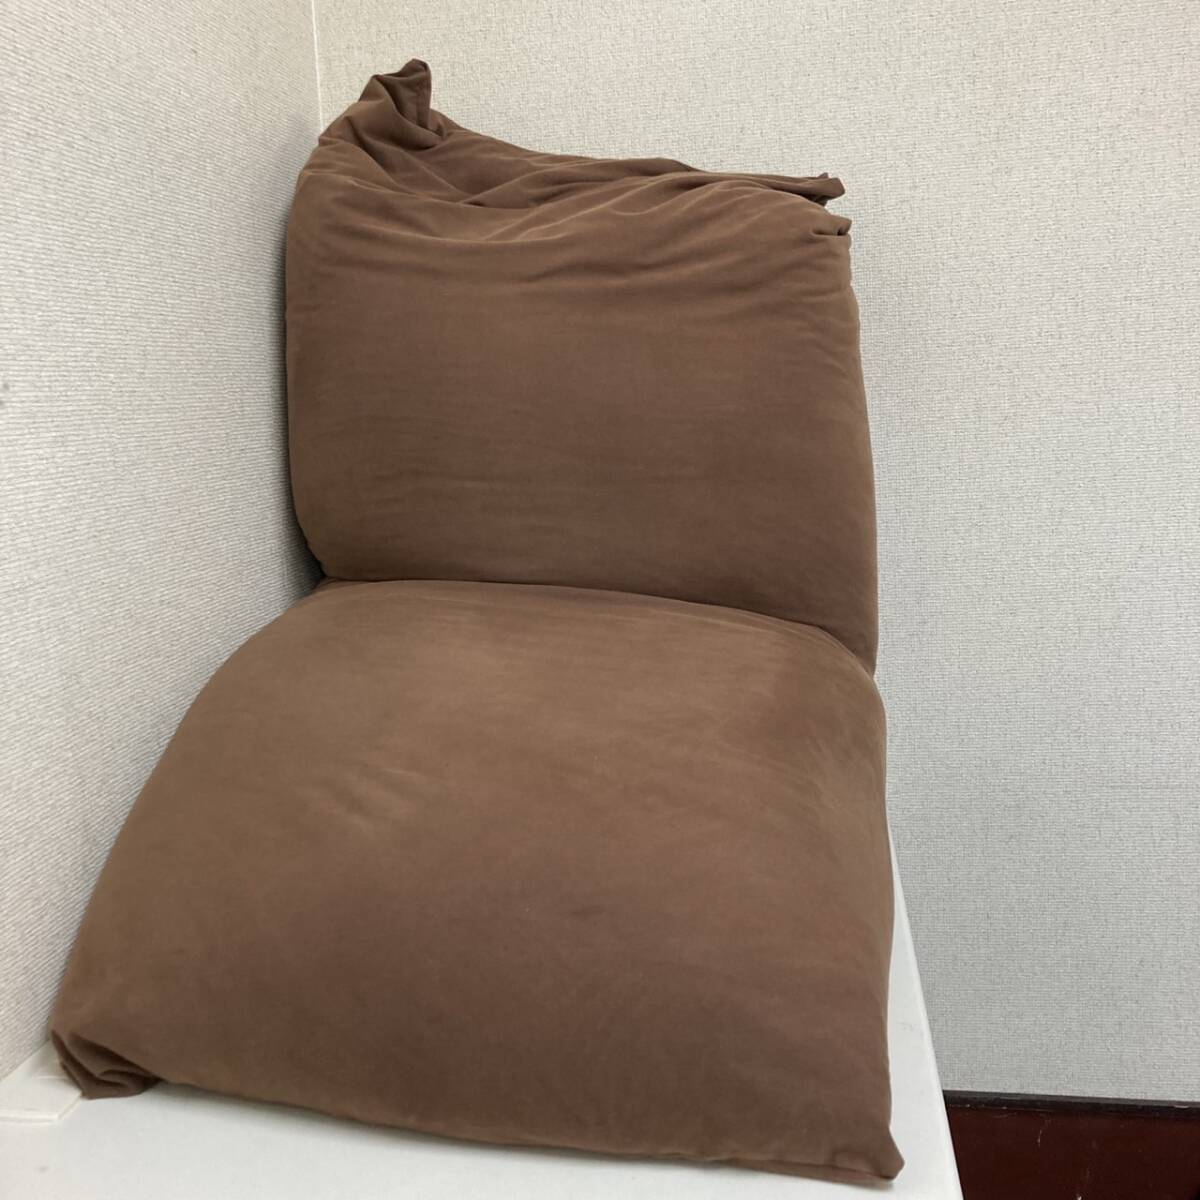 [5-88]Yogibo шоколад Brown бисер диван подушка yogibo-